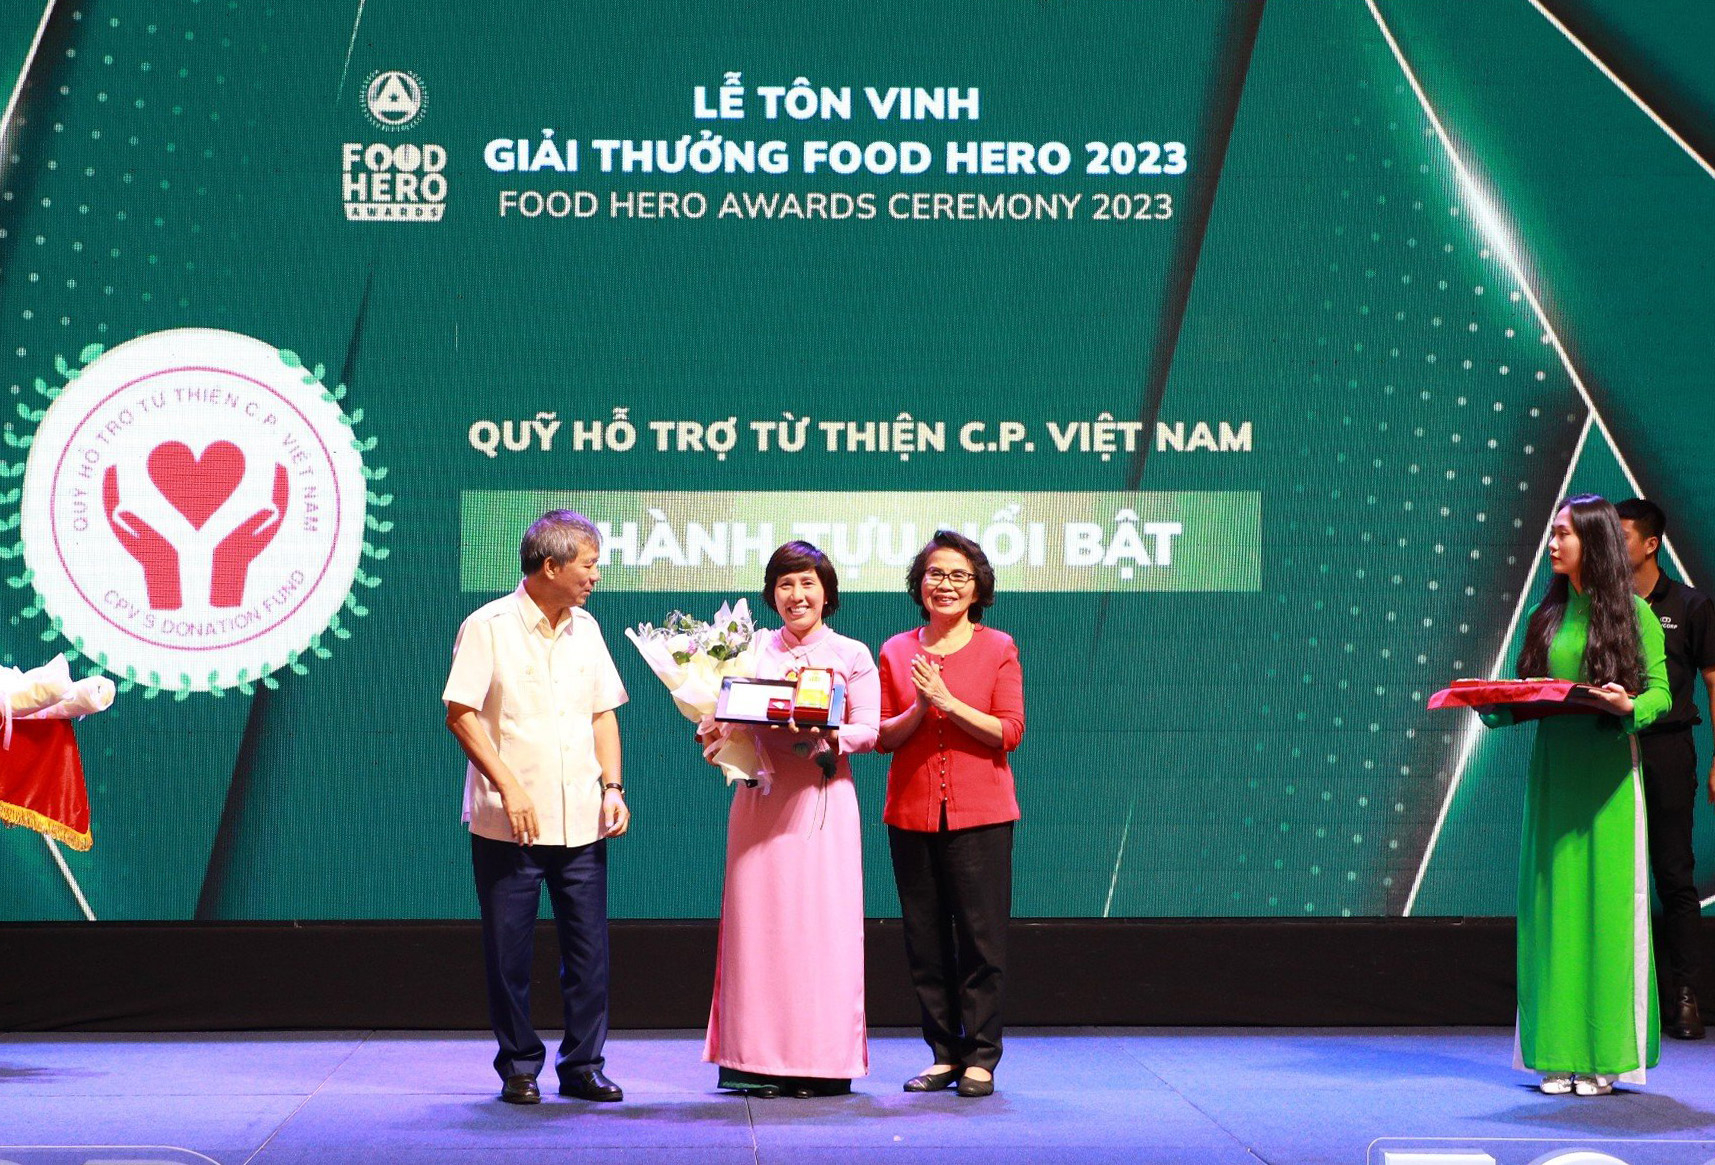 Quỹ Hỗ trợ Từ thiện C.P. Việt Nam được vinh danh tại Food Hero Awards 2023 với giải 'Thành tích nổi bật'.